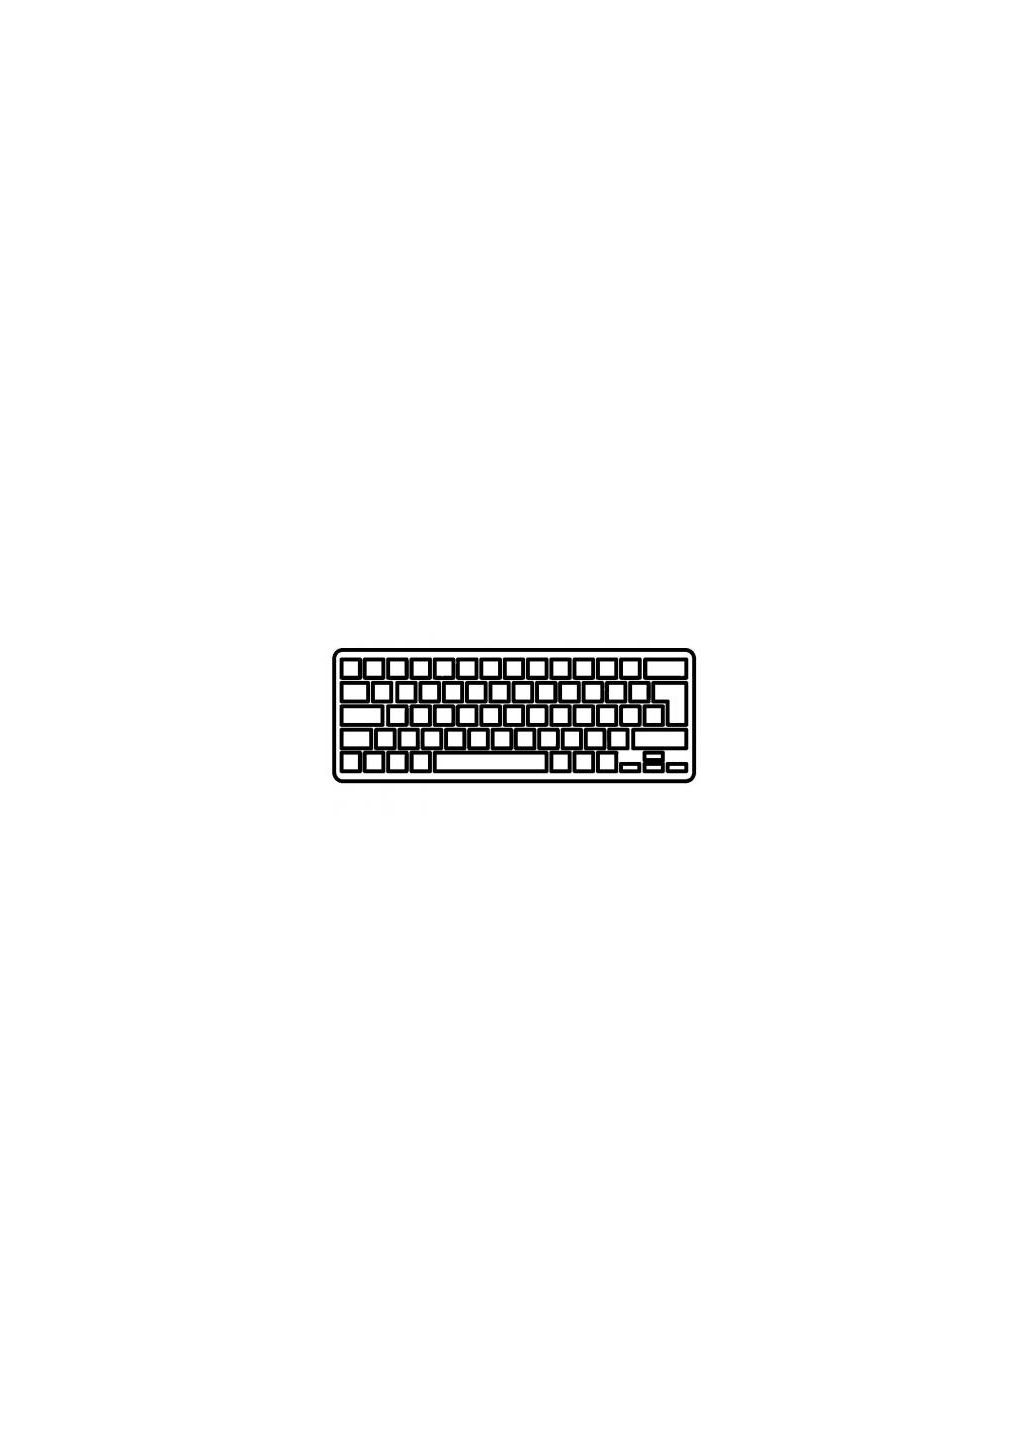 Клавиатура ноутбука Mini 2103000 Series черная без рамки RU (A43780) HP mini 210-3000 series черная без рамки ru (276706757)